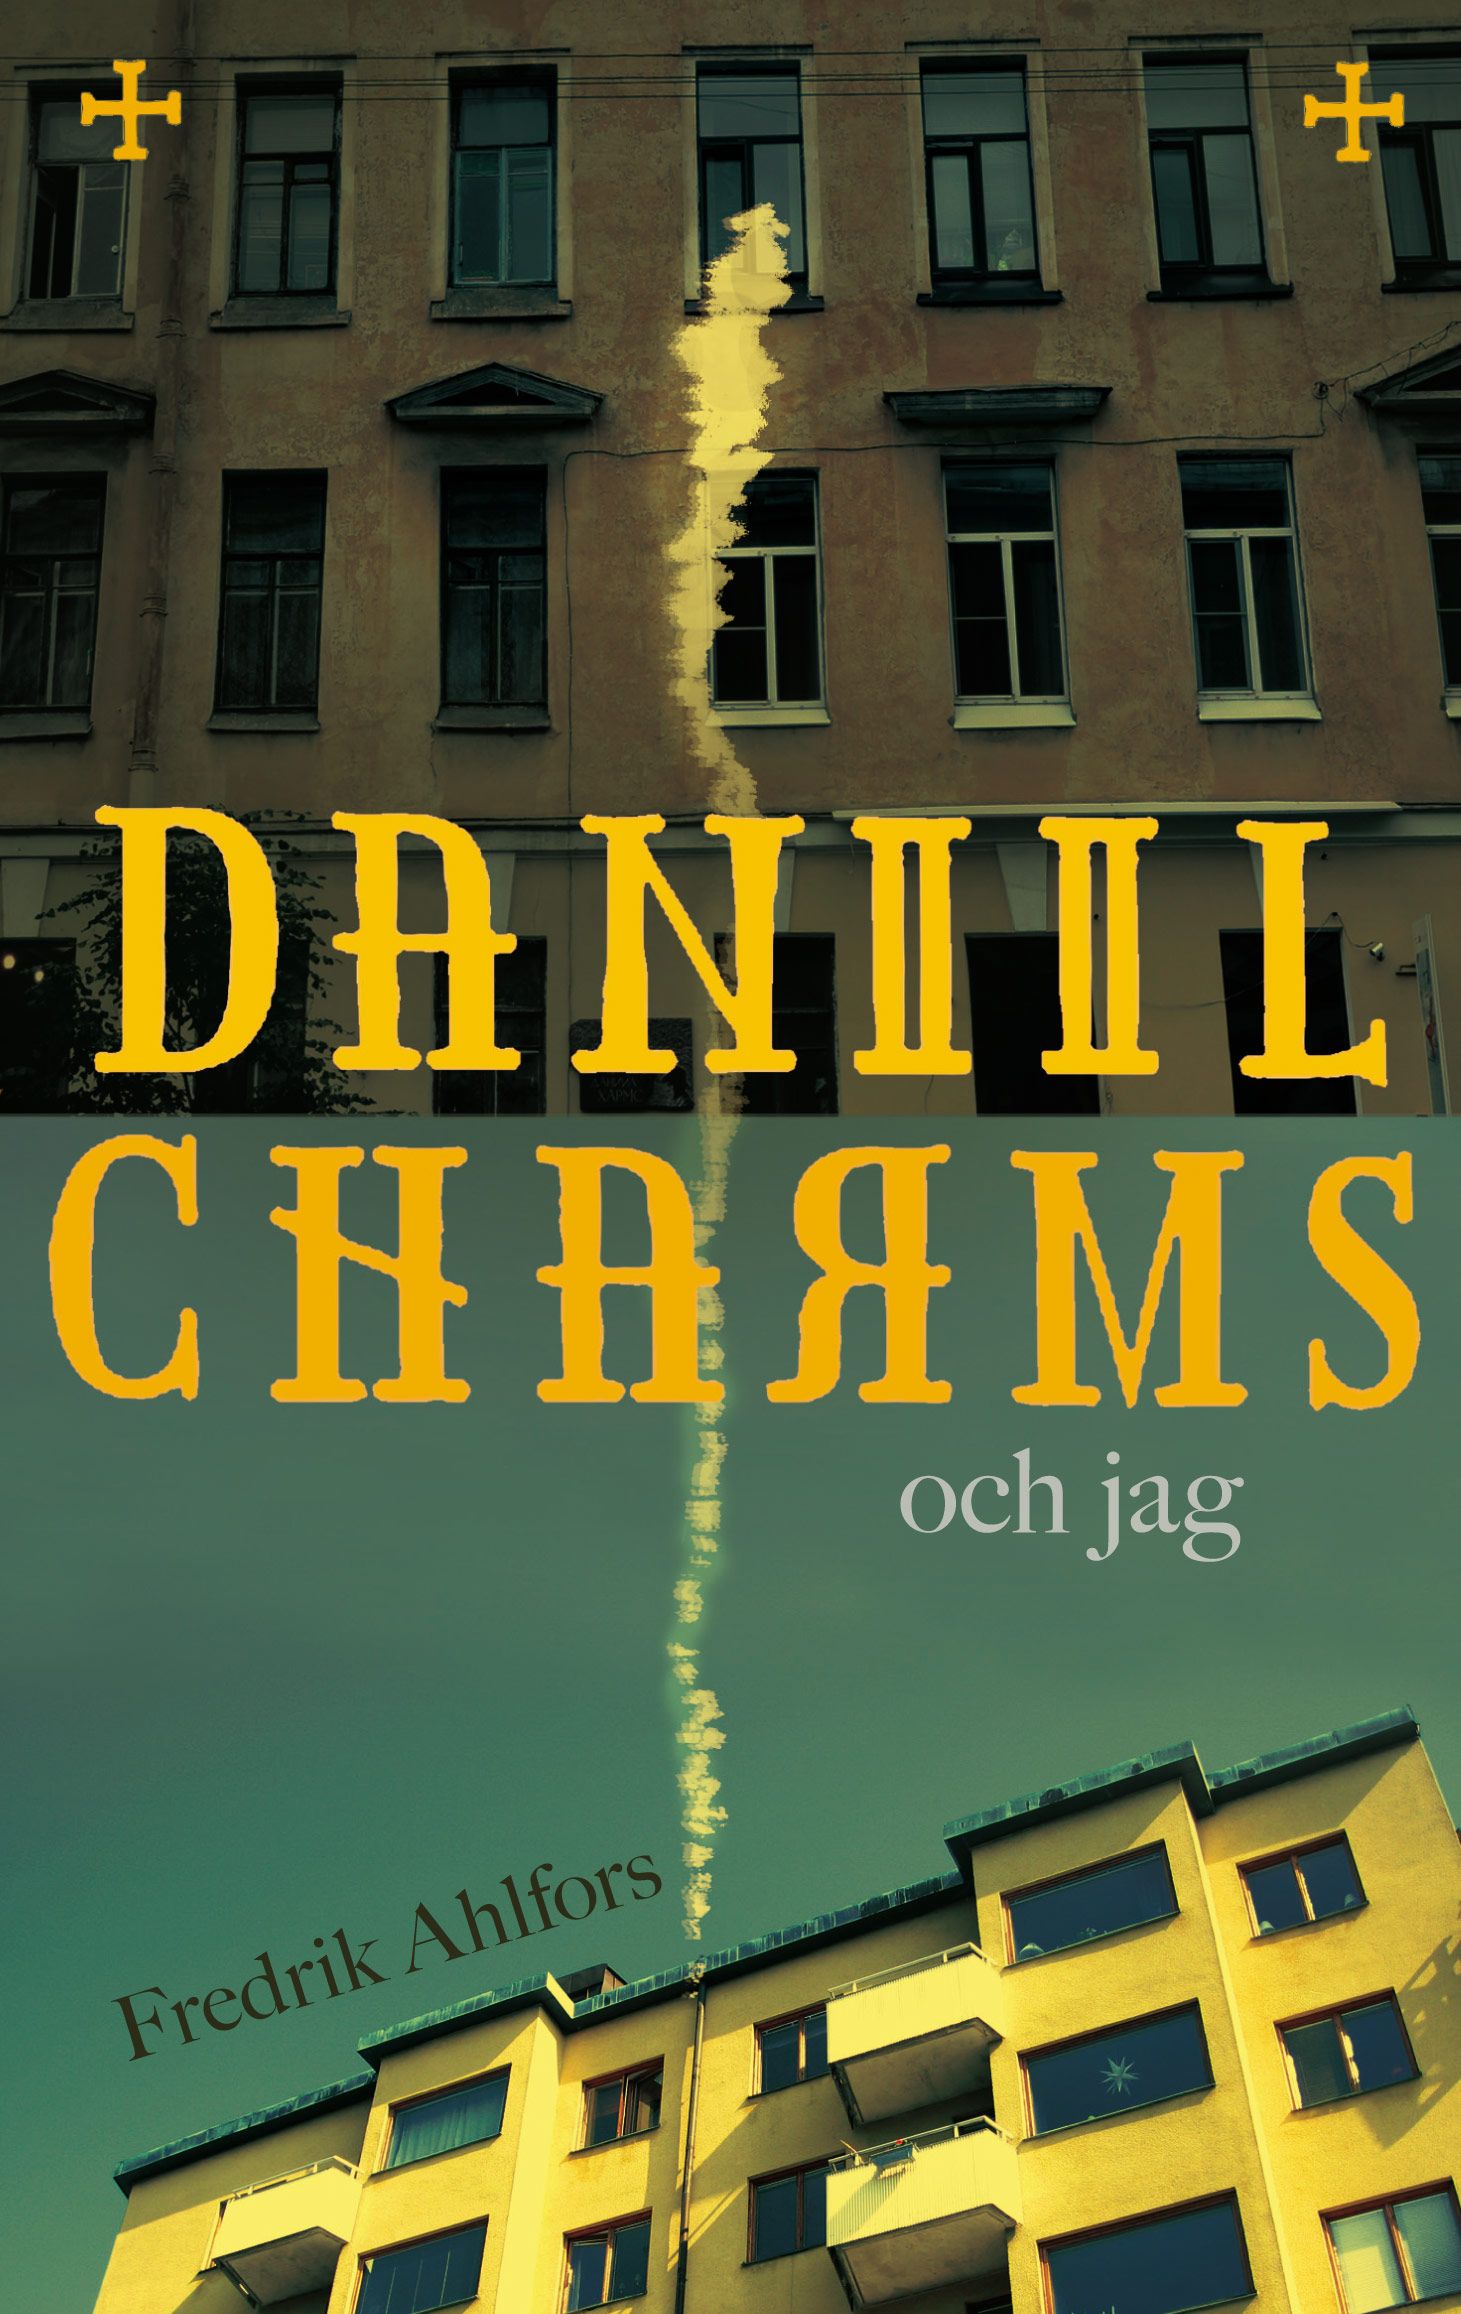 Daniil Charms och jag, e-bok av Fredrik Ahlfors